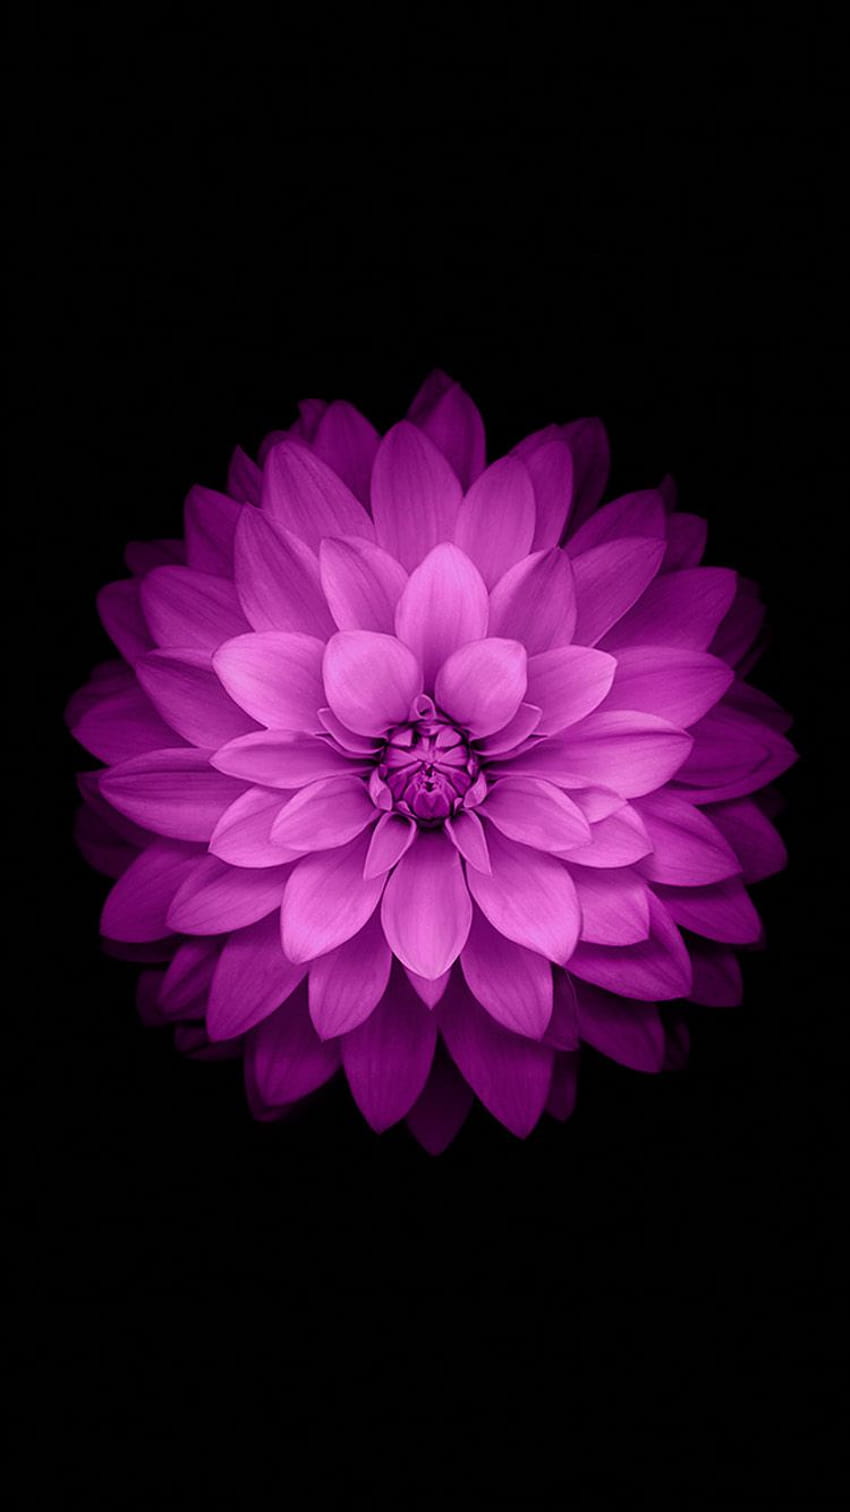 5 Flor Morada para iPhone, flores iphone fondo de pantalla del teléfono